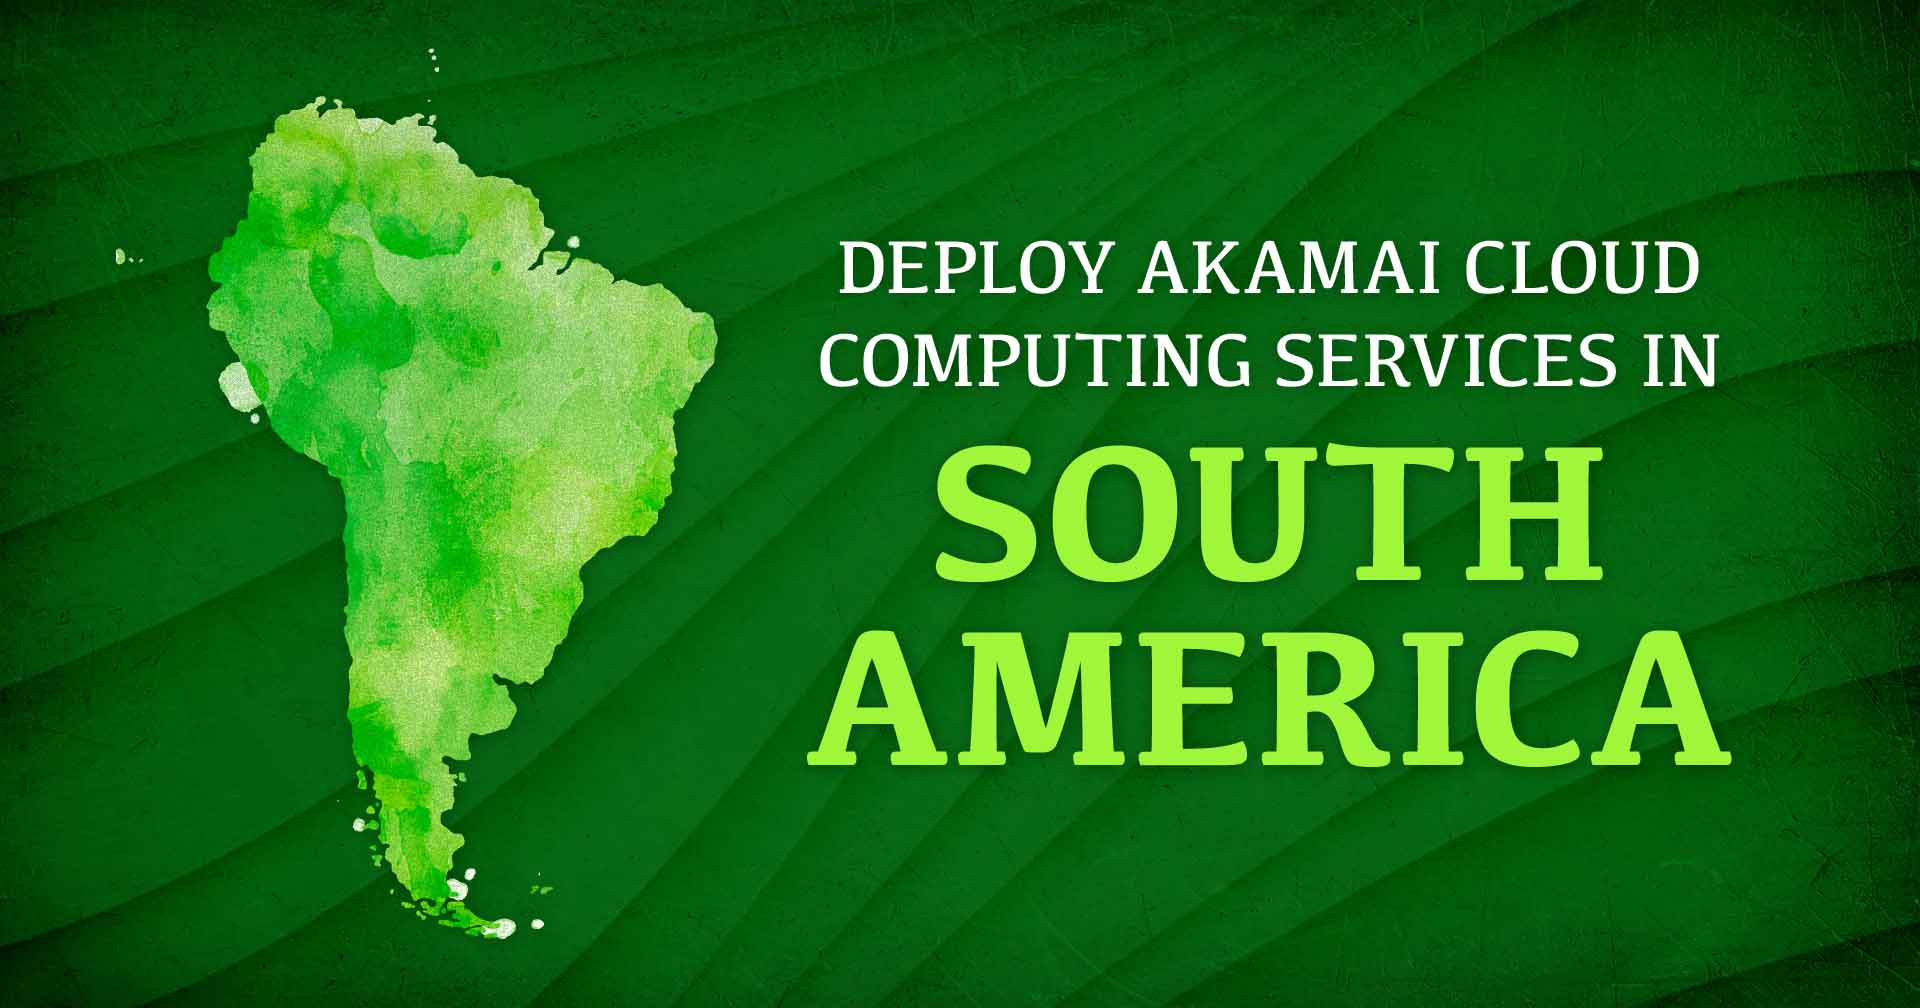 Bilddarstellung von Südamerika neben dem Text Deploy Akamai Cloud Computing Services in South America.